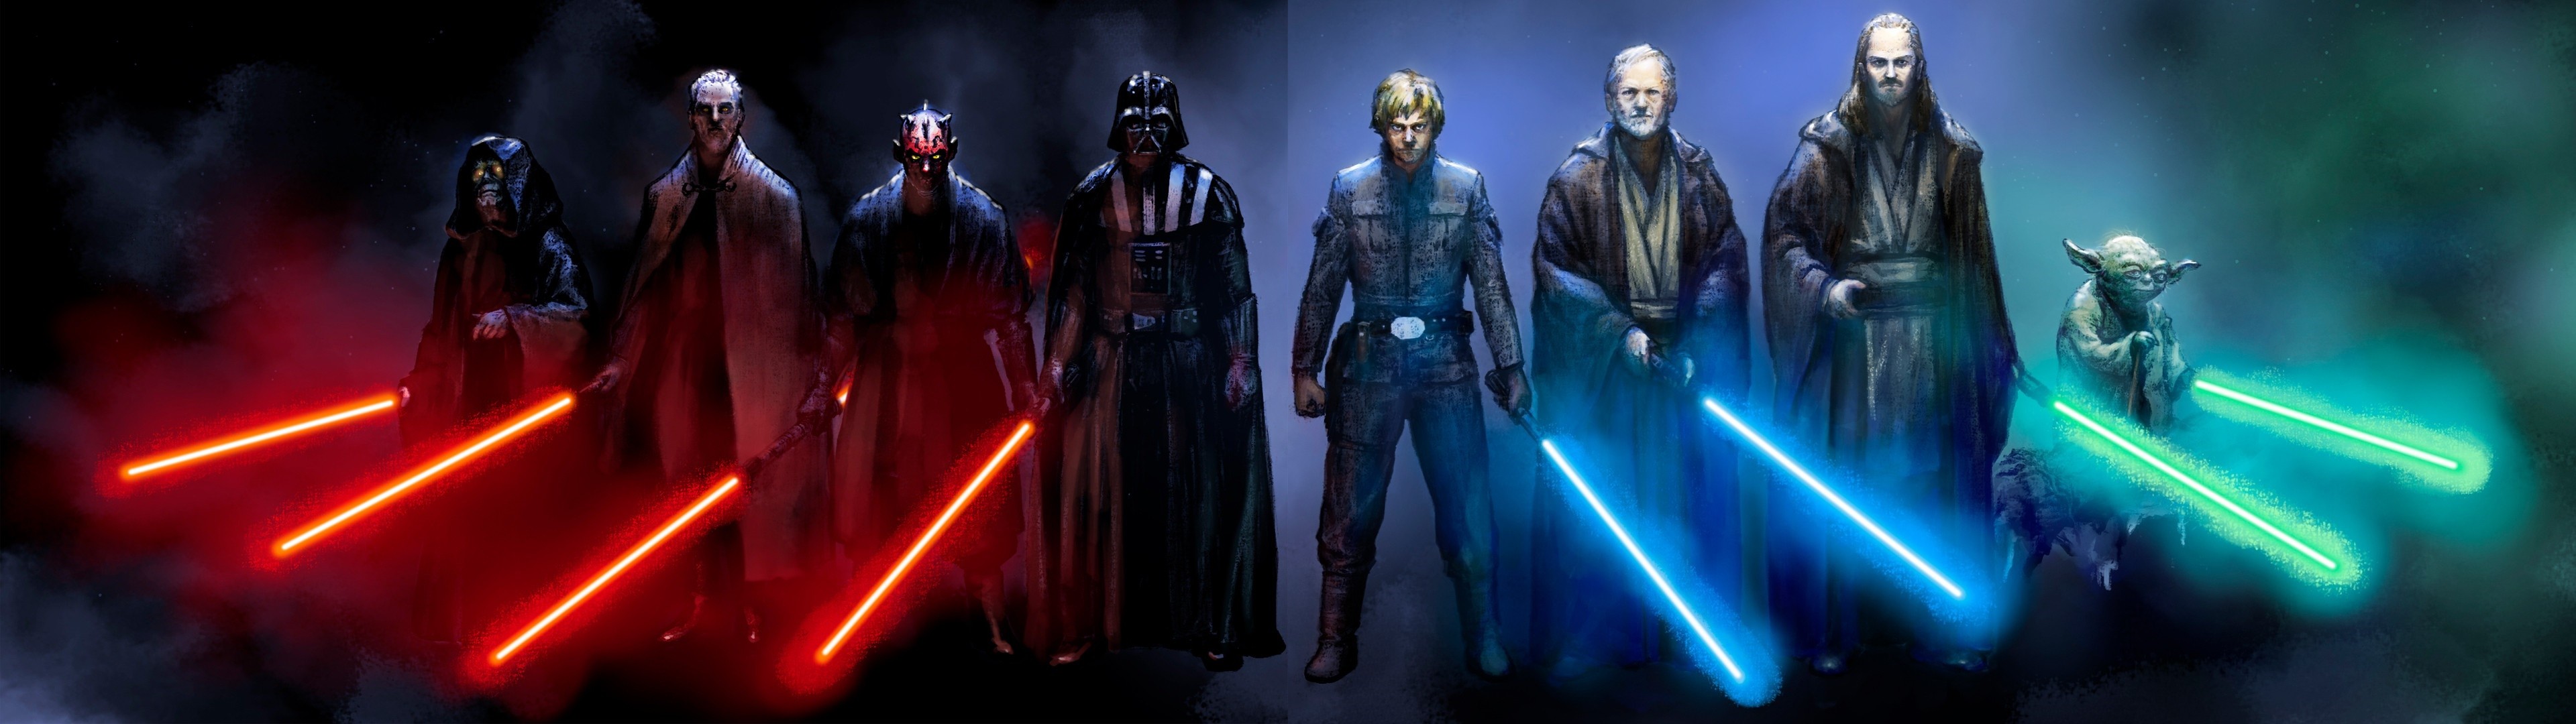 3840x1080 Sci Fi - Star Wars Darth Vader Darth Maul Yoda Obi-Wan Kenobi Sith (